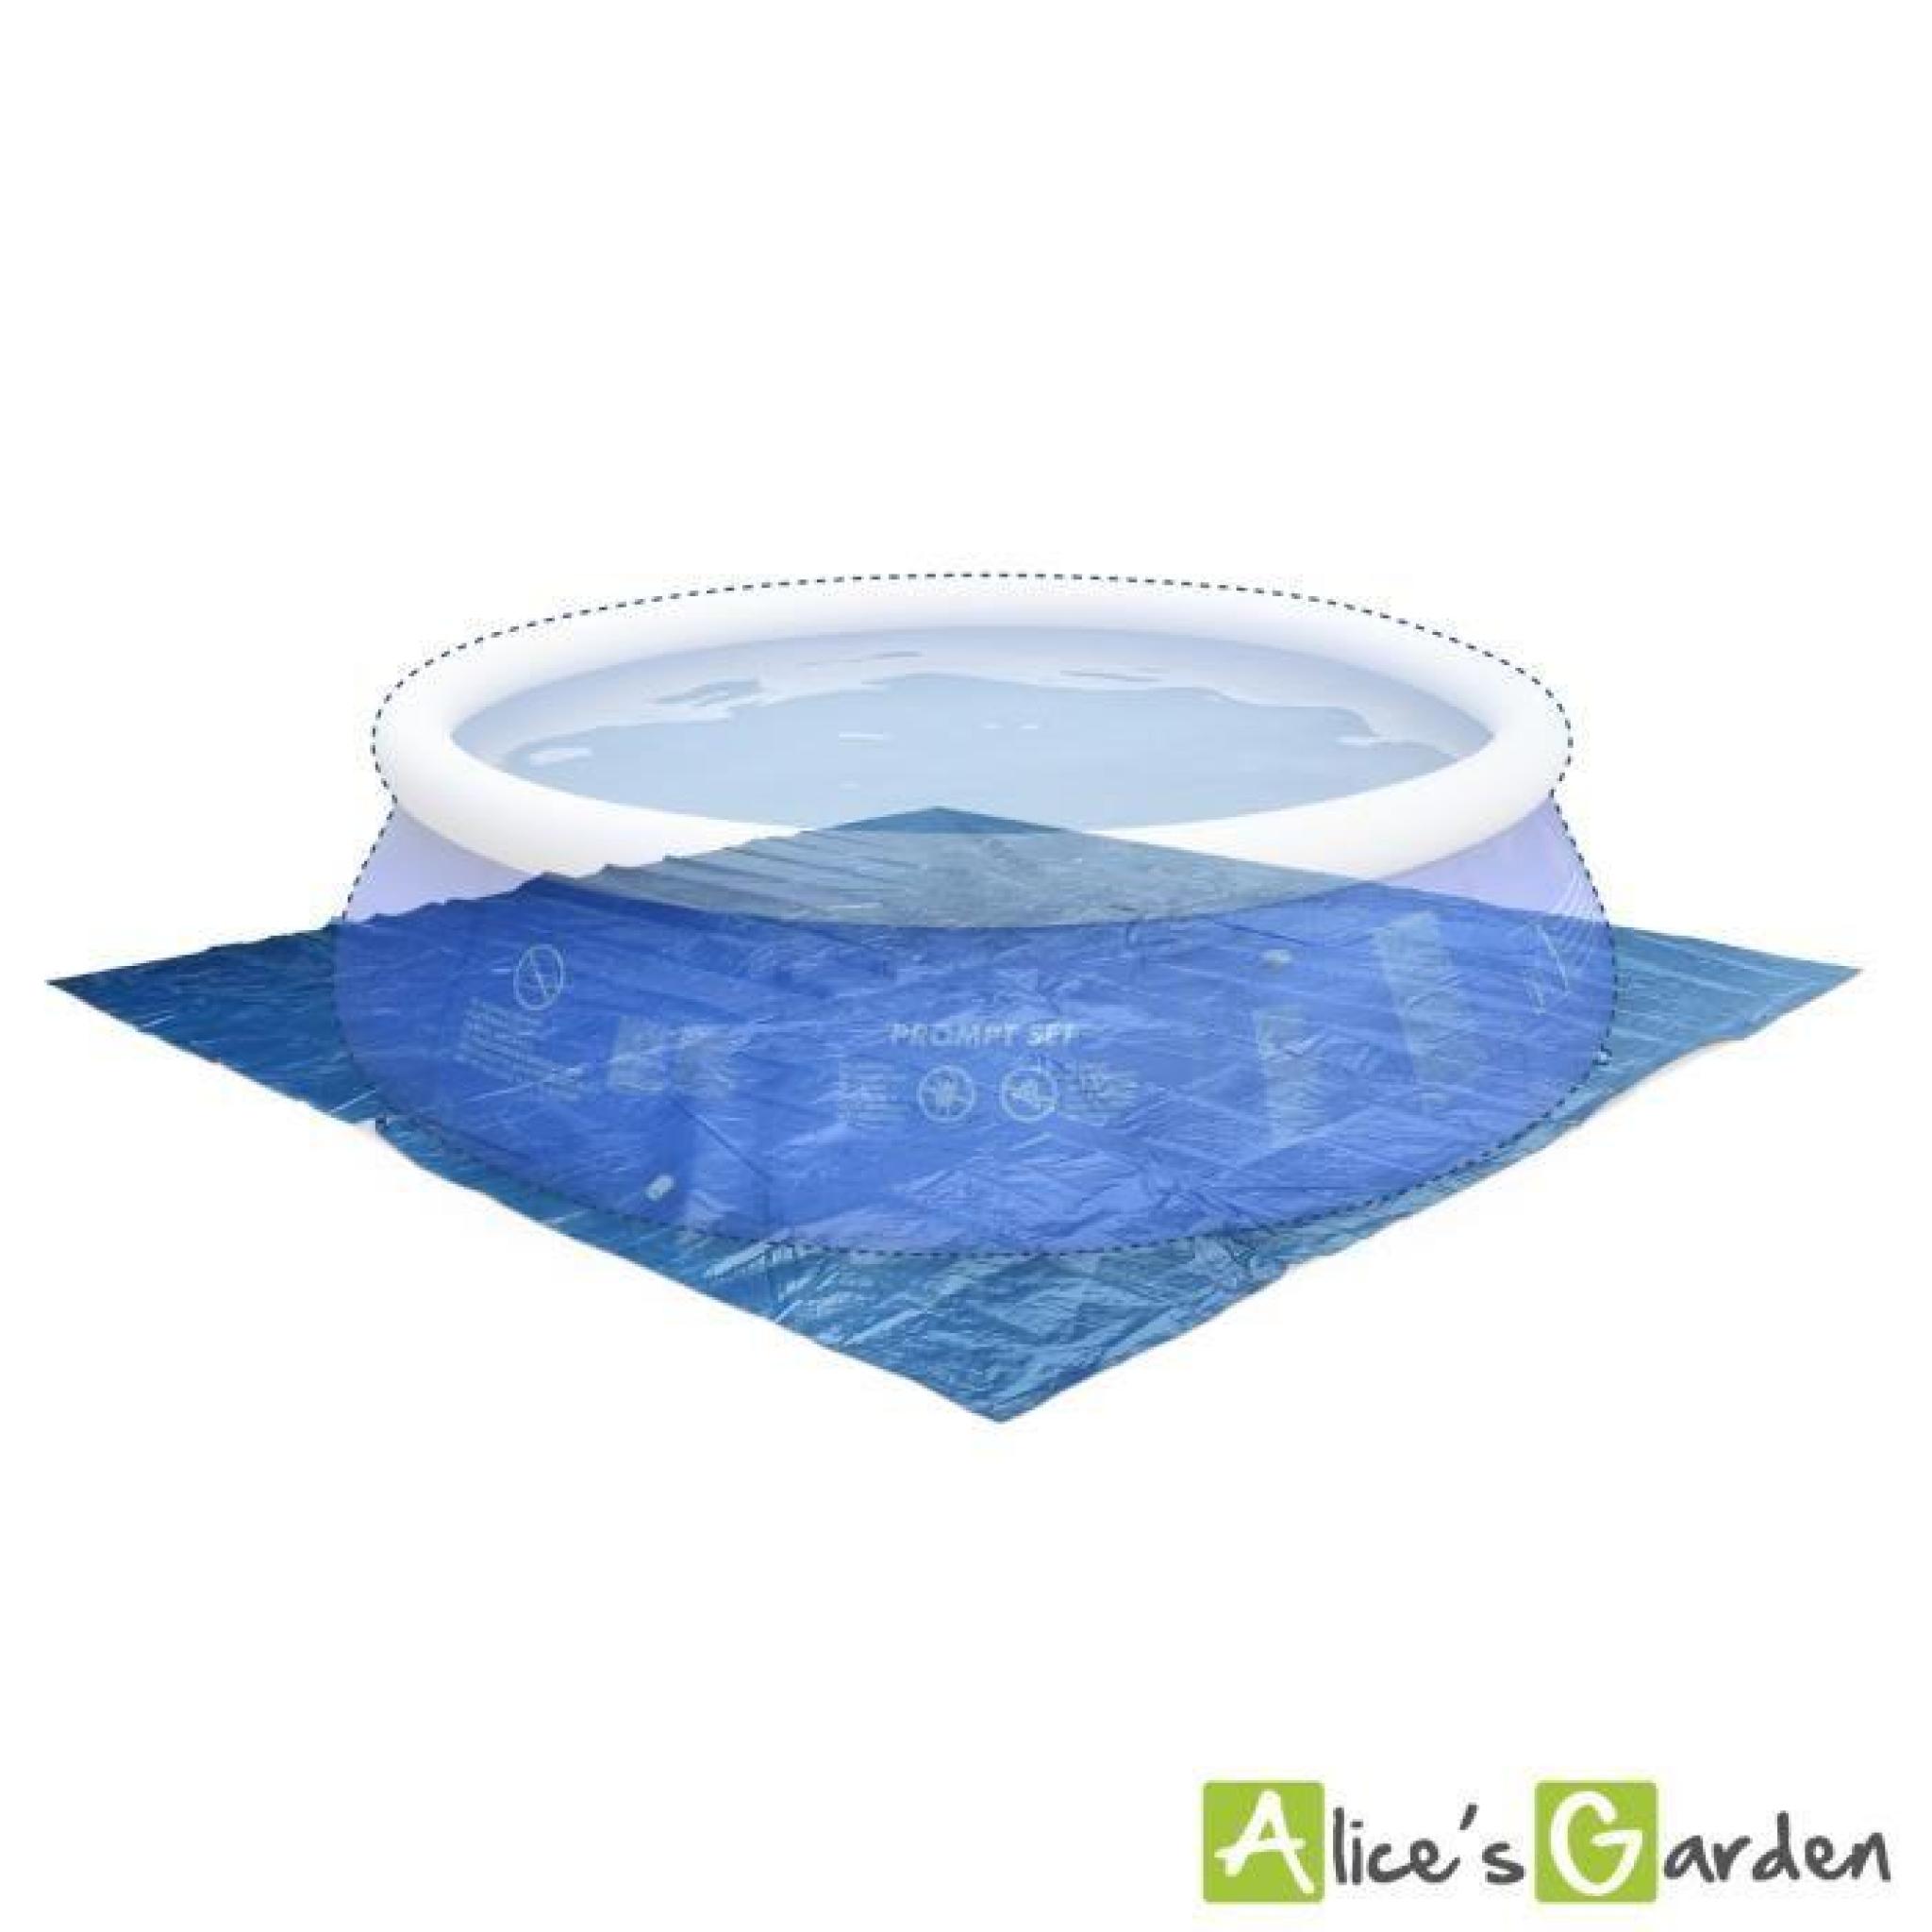 Tapis de sol bleu 390 x 390 cm pour piscine ronde hors sol Ø 360cm, bâche, couverture, protection sol